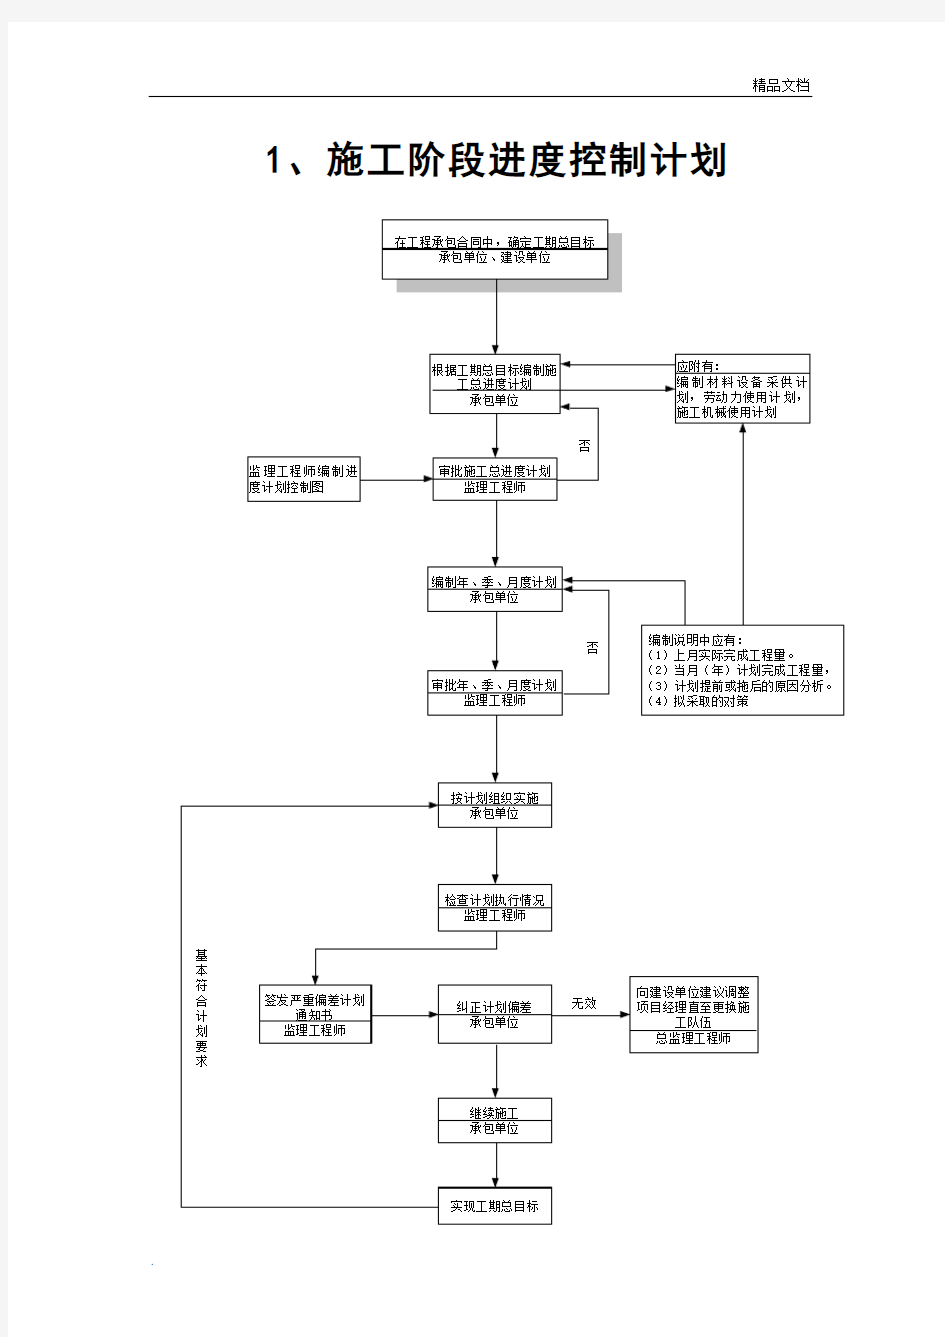 监理工作程序流程图(通用)